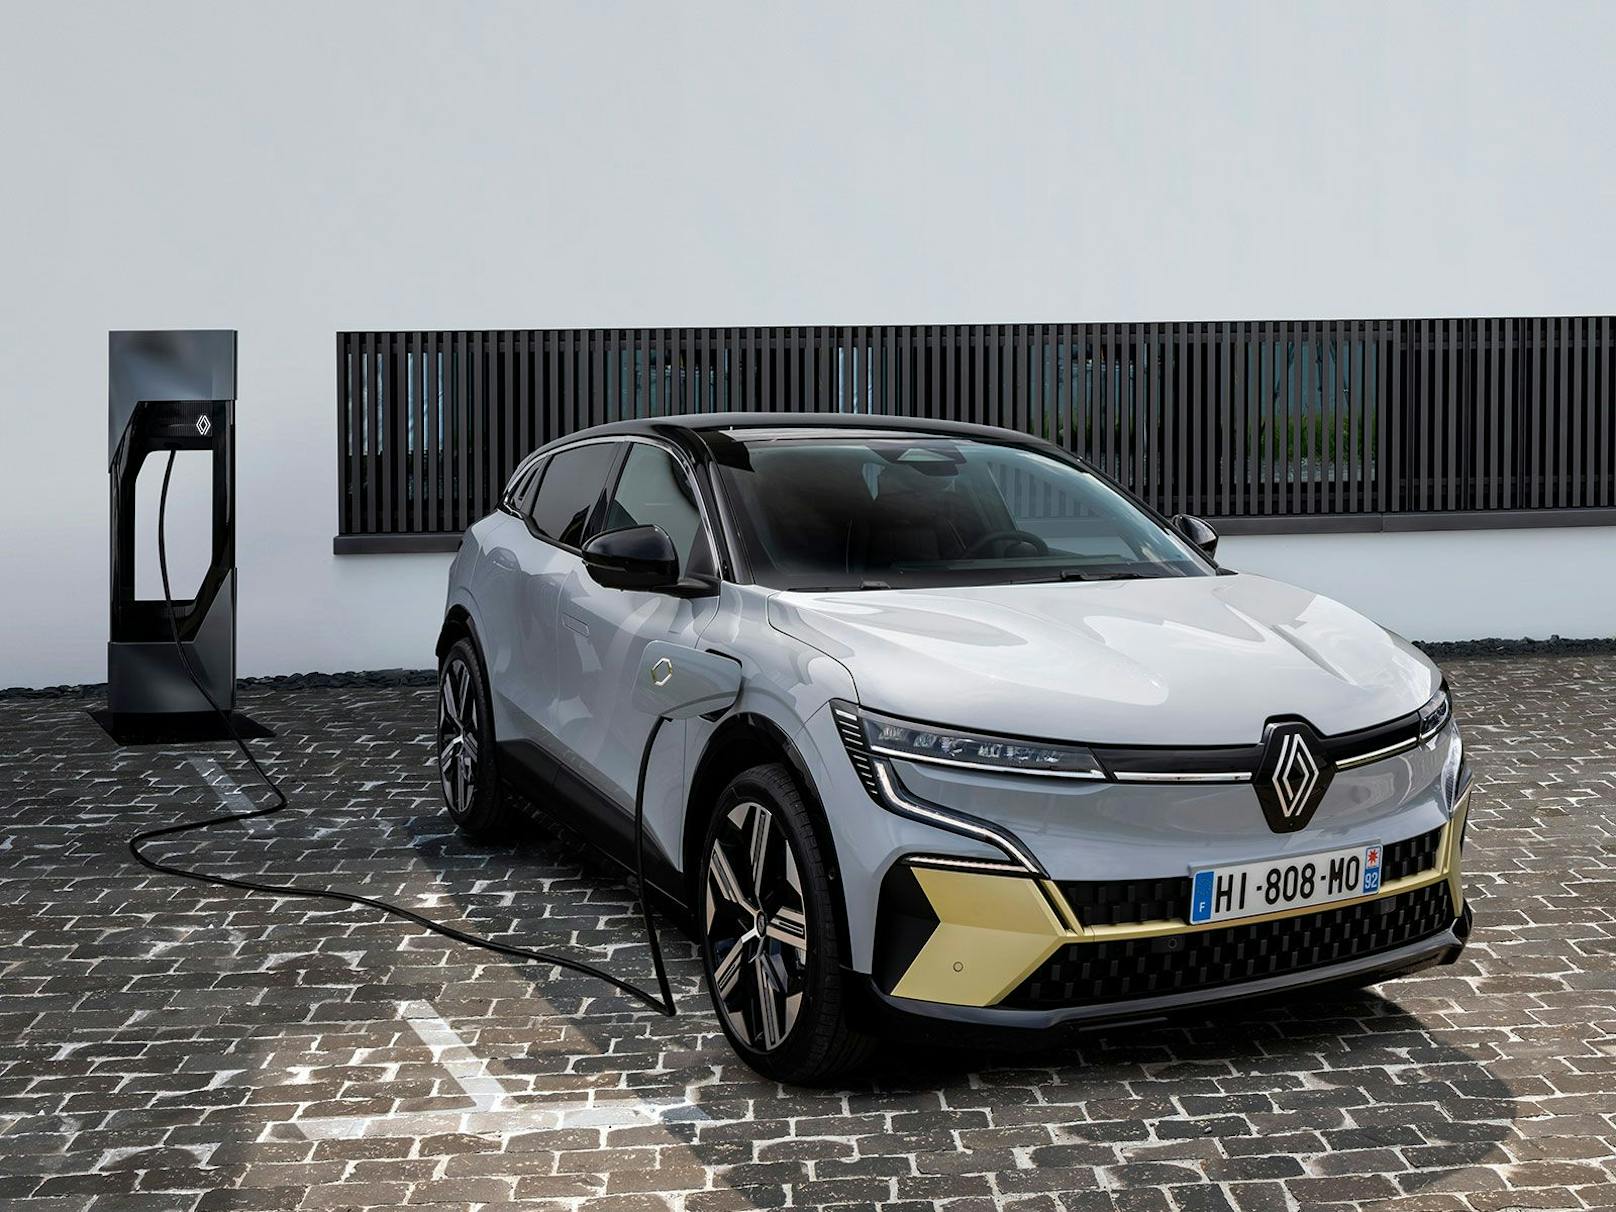 Preise für den neuen Renault Megane E-TECH stehen fest